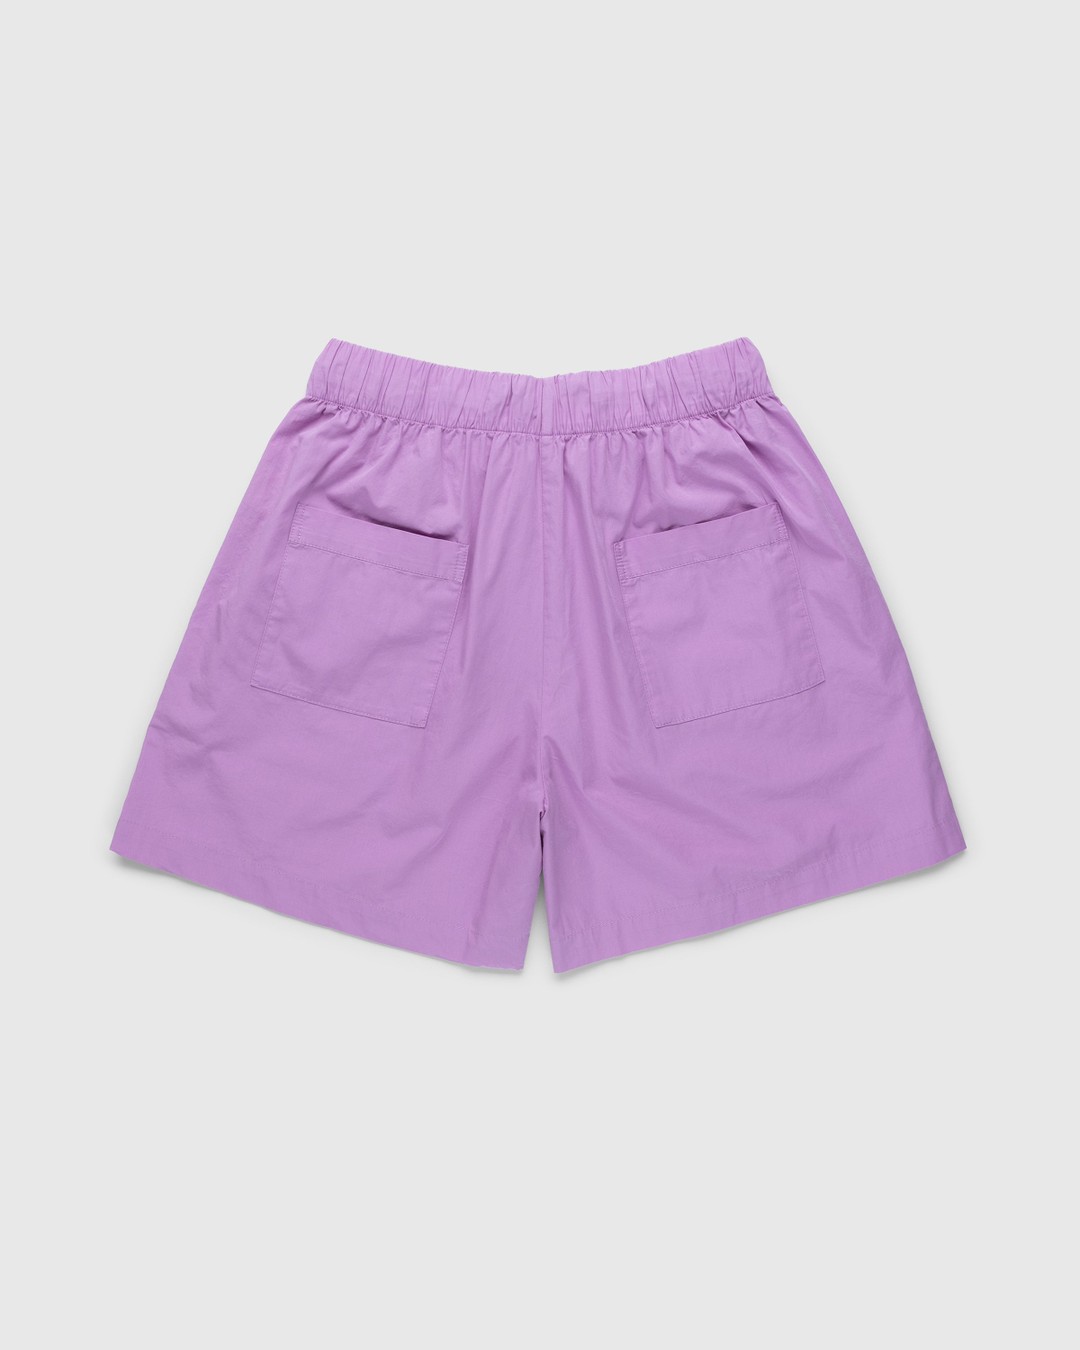 Tekla – Cotton Poplin Pyjamas Shorts Purple Pink - Pyjamas - Pink - Image 2